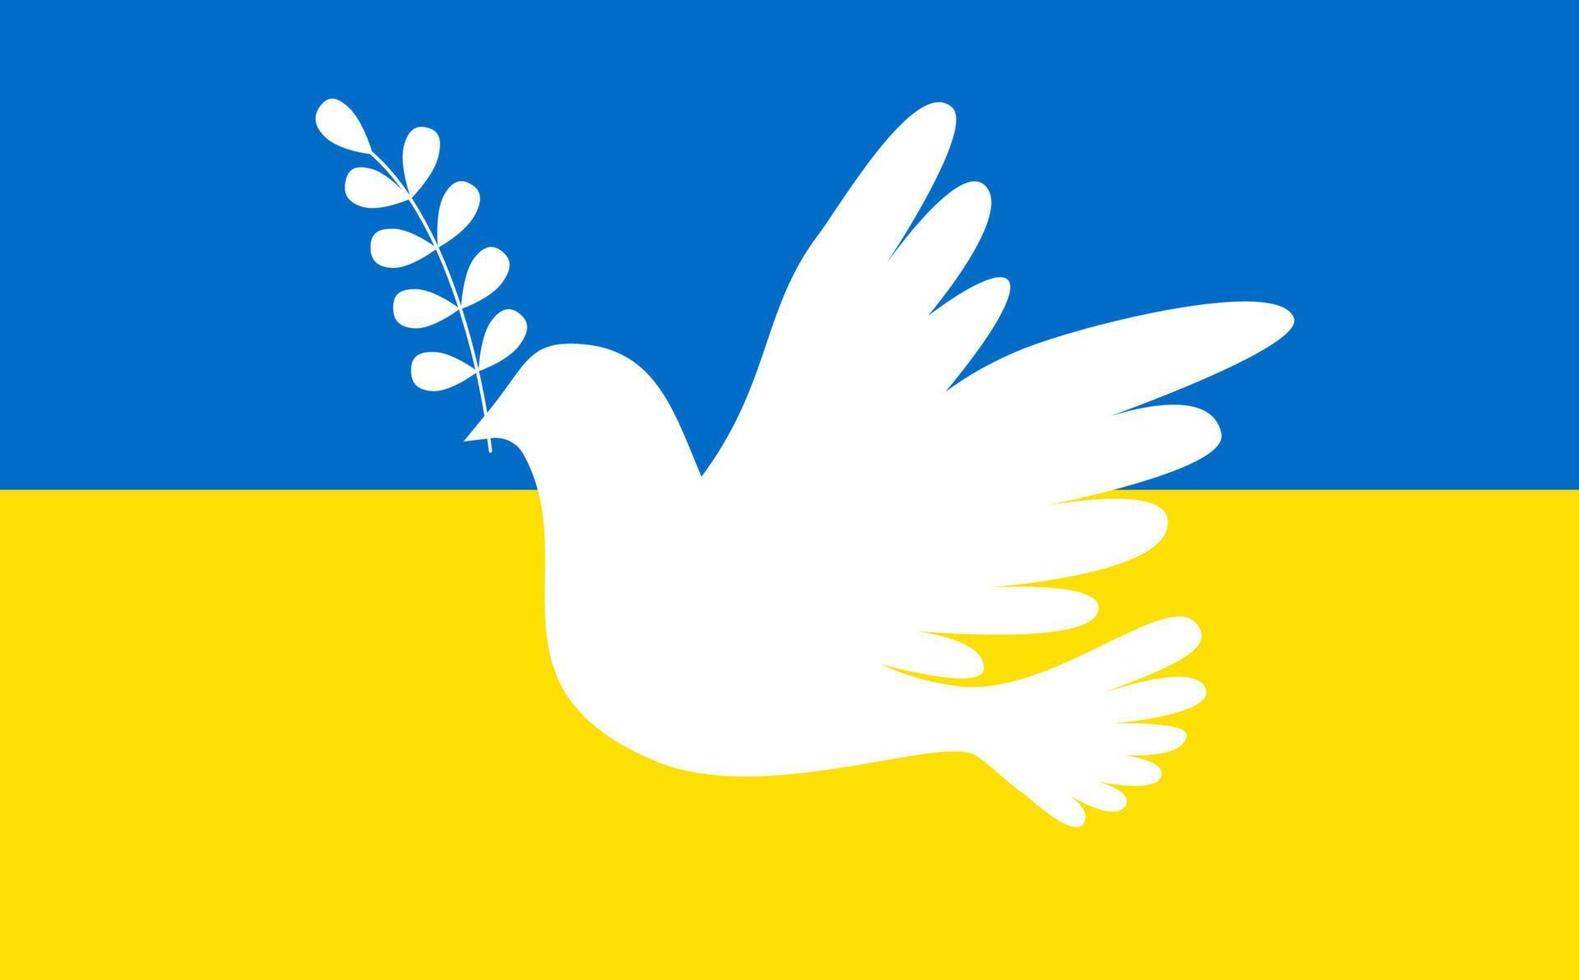 oekraïens vlag met vrede en liefde in de het formulier van een duif. de concept van vrede - de idee van vrede in Oekraïne. voor ontwerp en web. vector